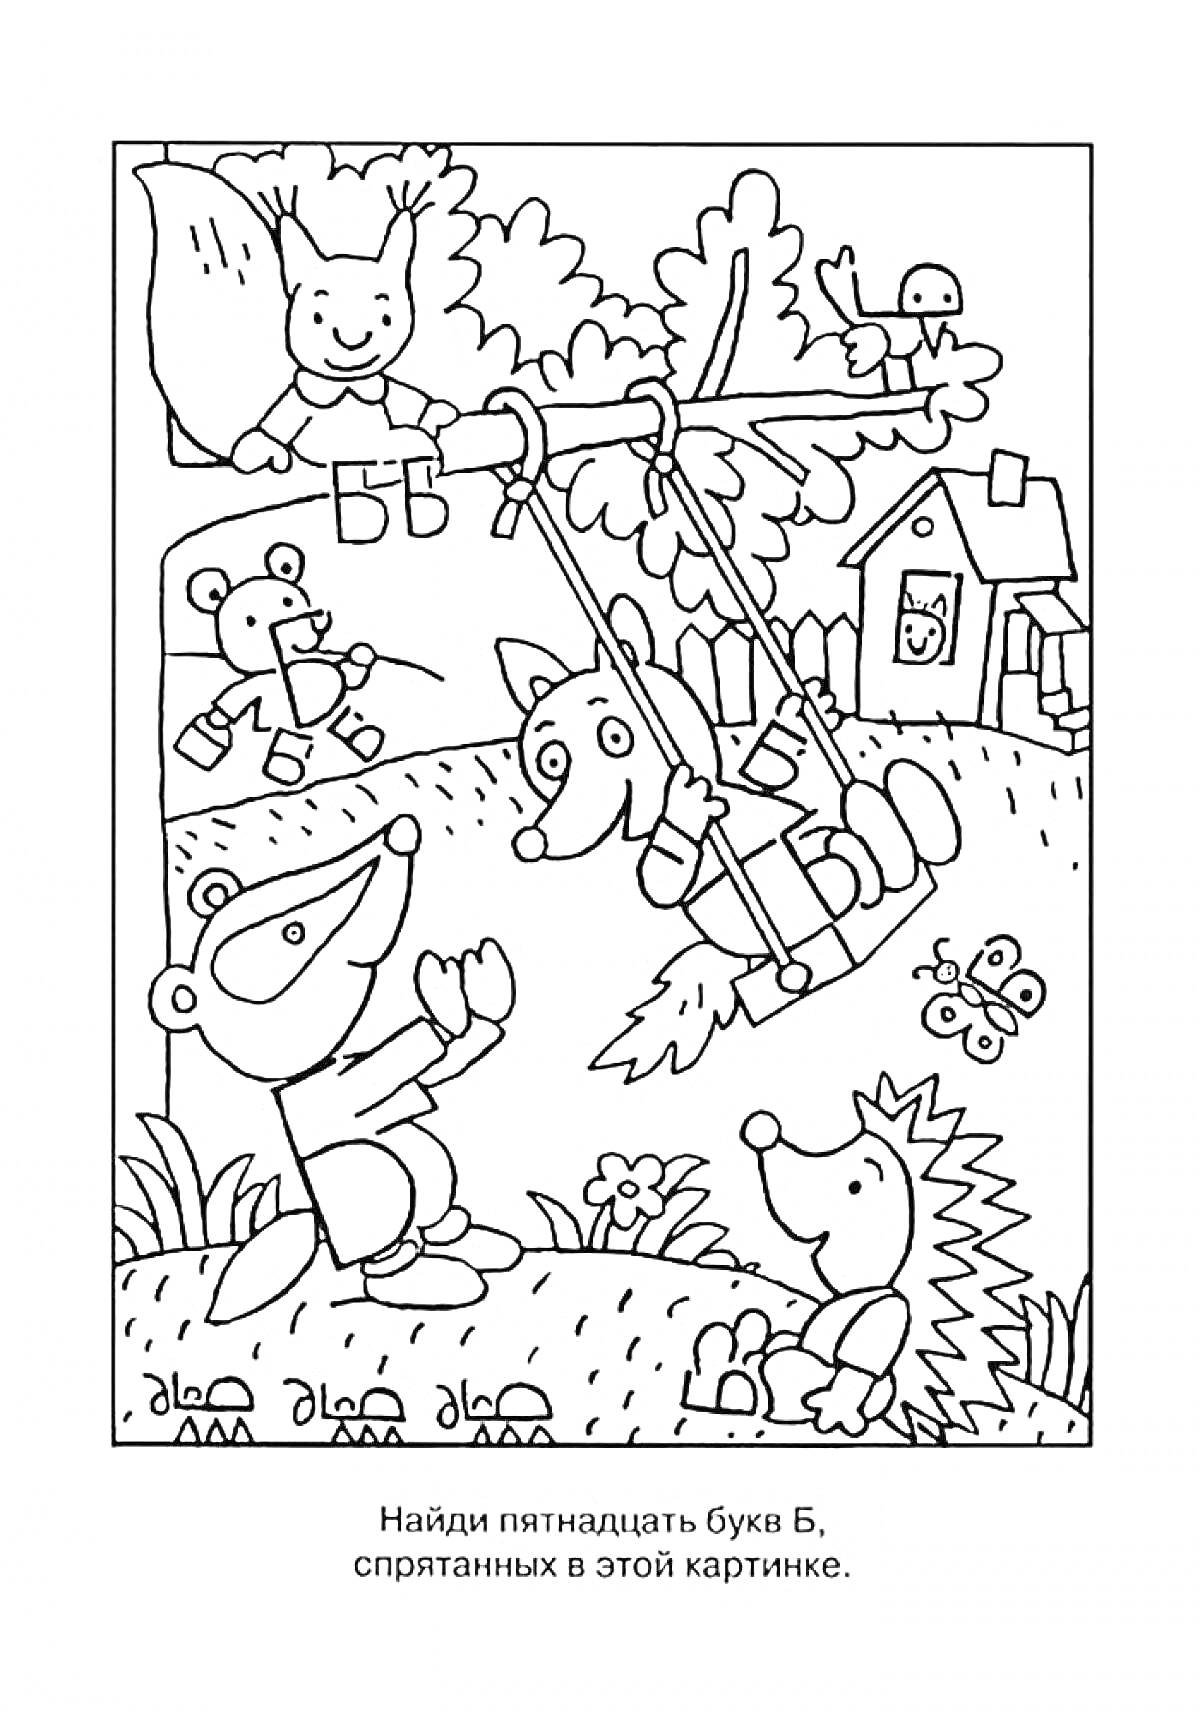 На раскраске изображено: Буква Б, Лес, Медведь, Игра, Буквы, Животные, Еж, Зайцы, Лиса, Образование